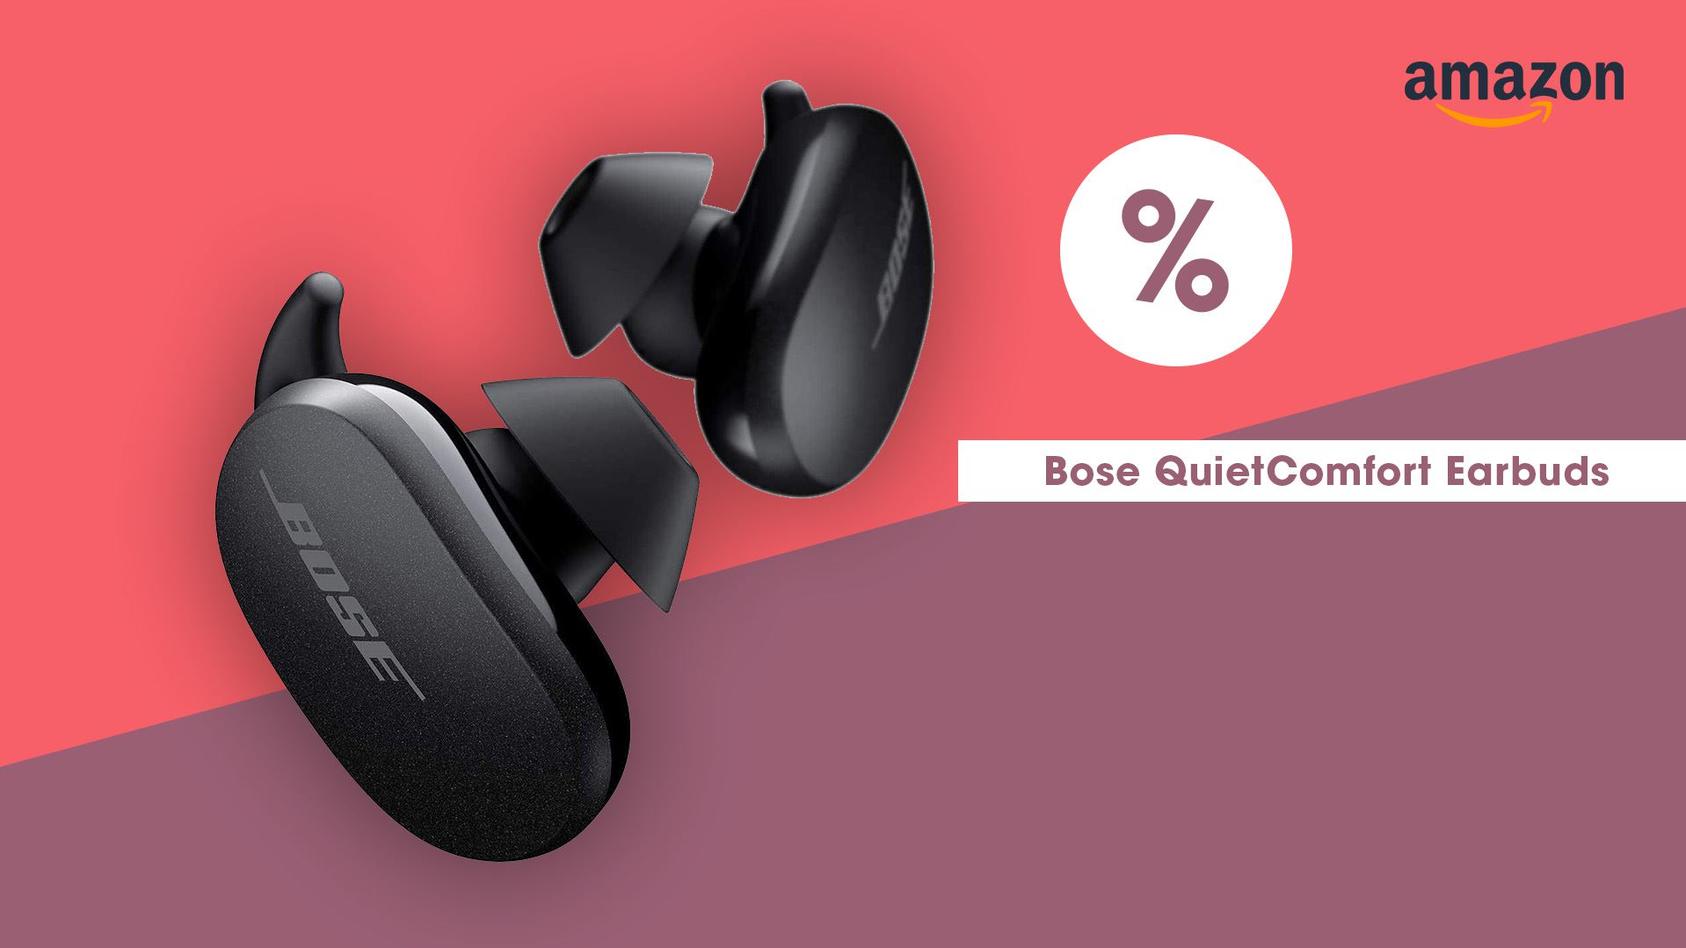 Die Bose QuietComfort Earbbuds sind am Black Friday zum günstigsten Preis zu haben